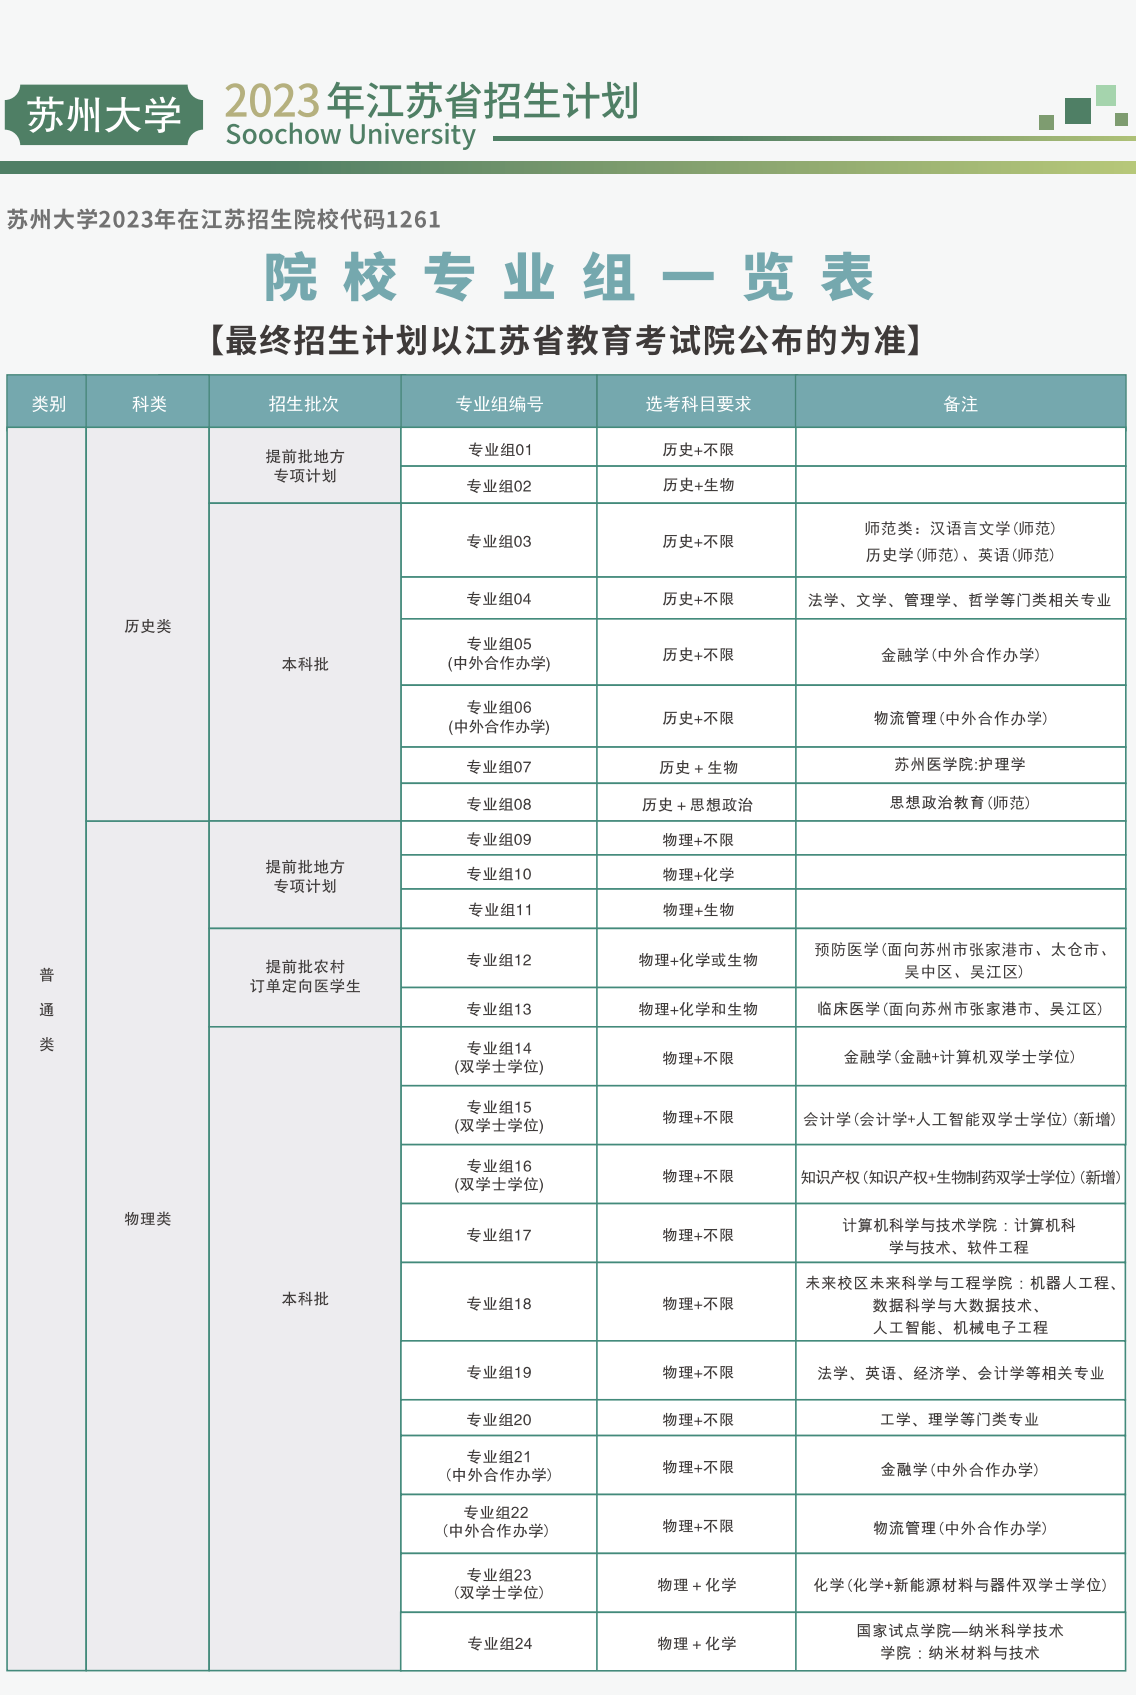 苏州大学 - 2023年江苏招生计划(图文版)